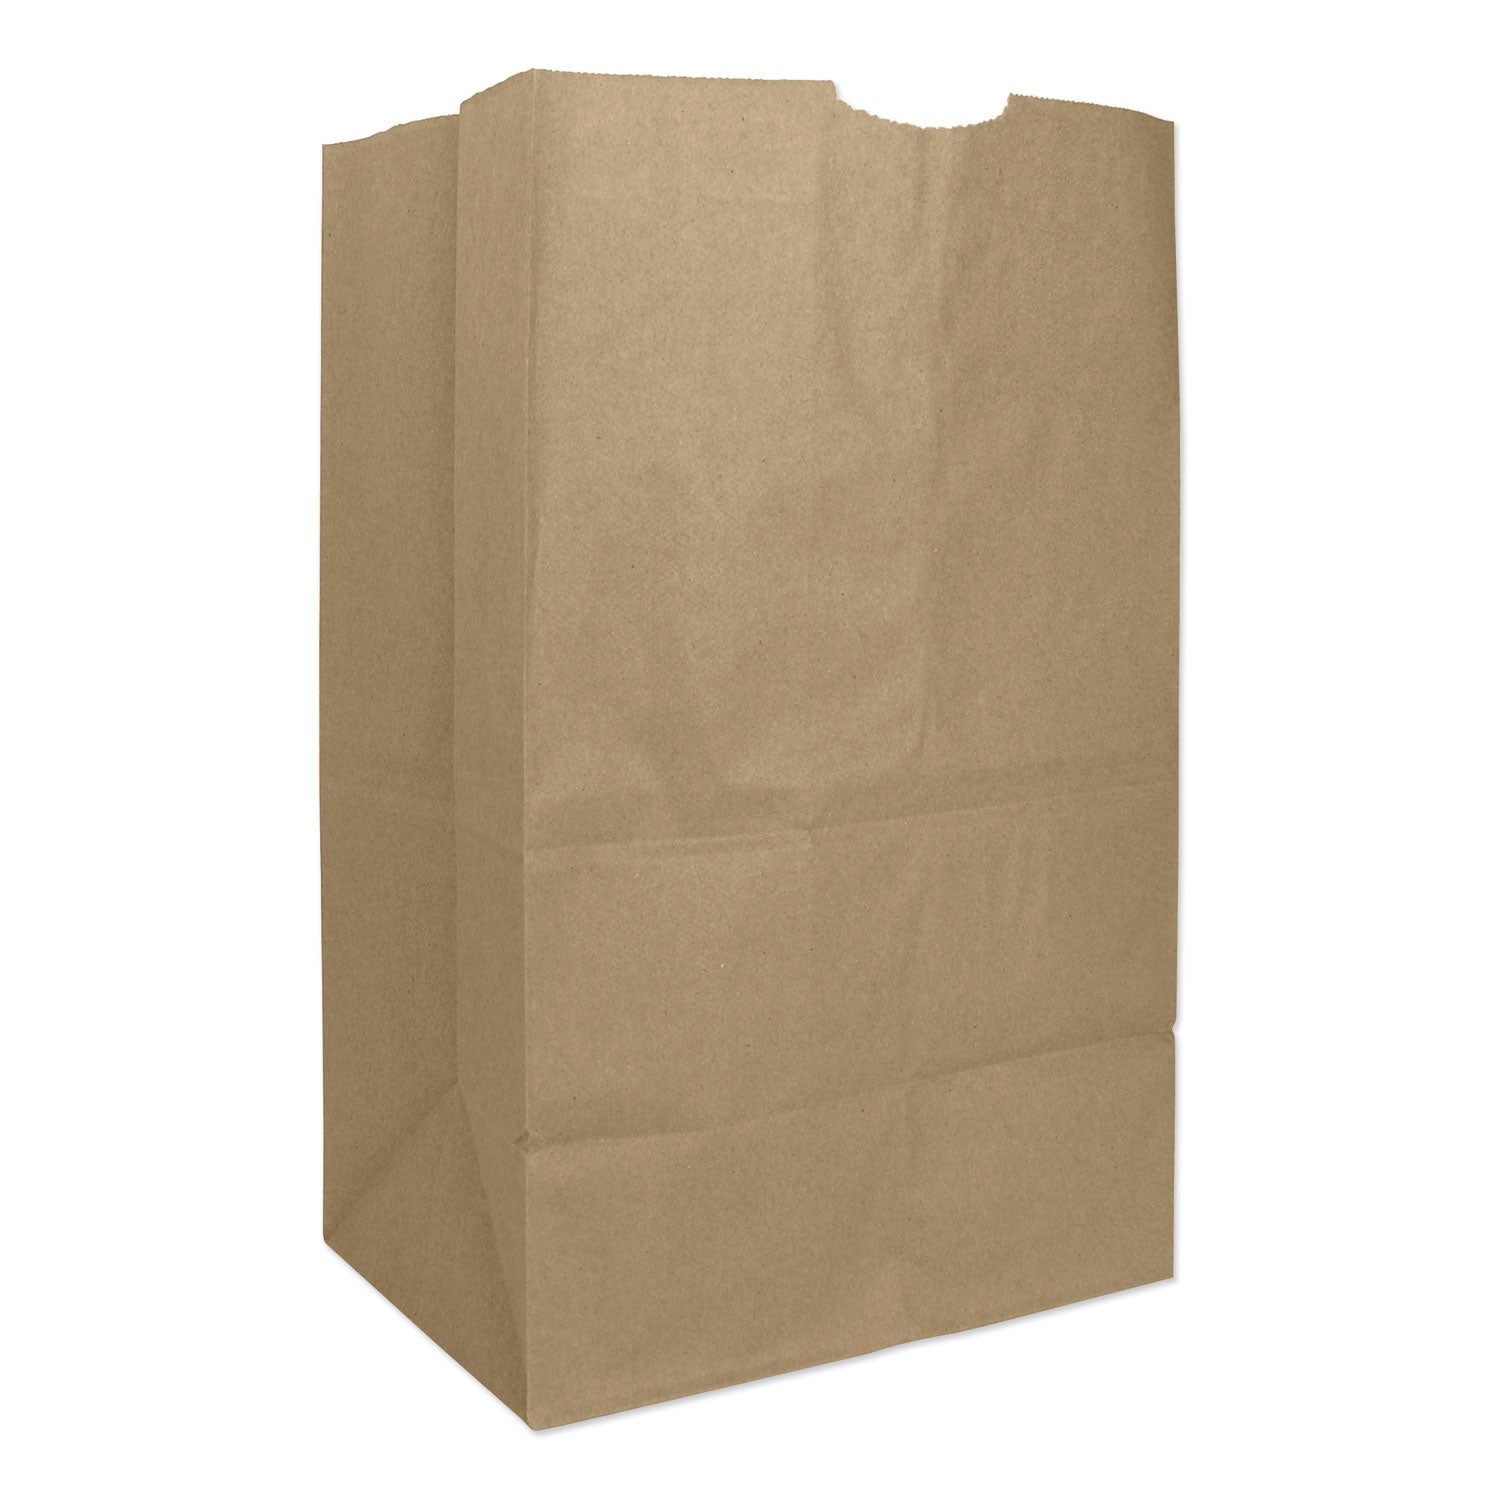 grocery-paper-bags-50-lb-capacity-#20-squat-825-x-594-x-1338-kraft-500-bags_baggh20s - 1